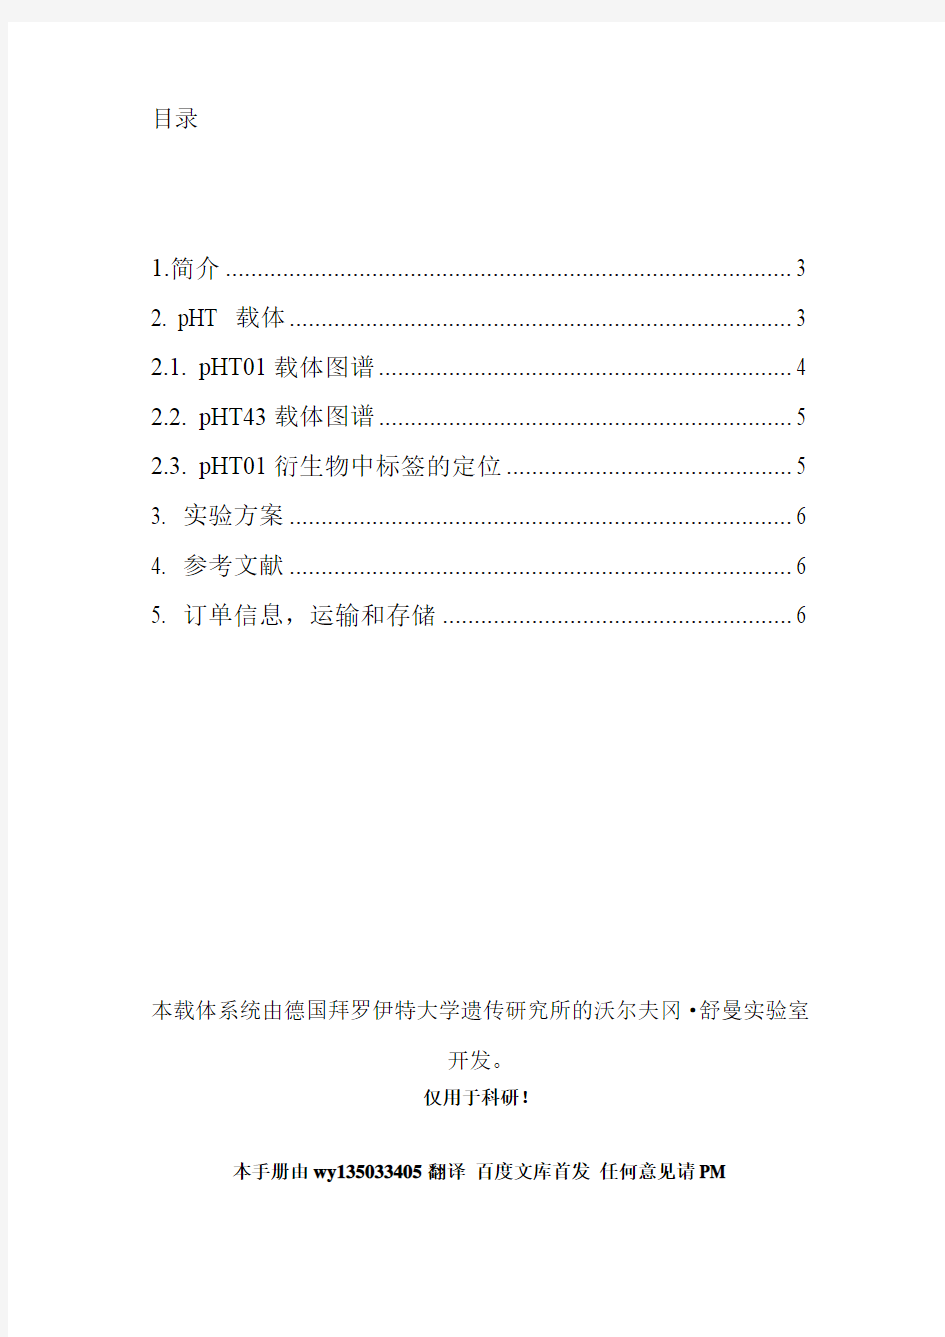 枯草芽孢杆菌表达手册 个人翻译中文版